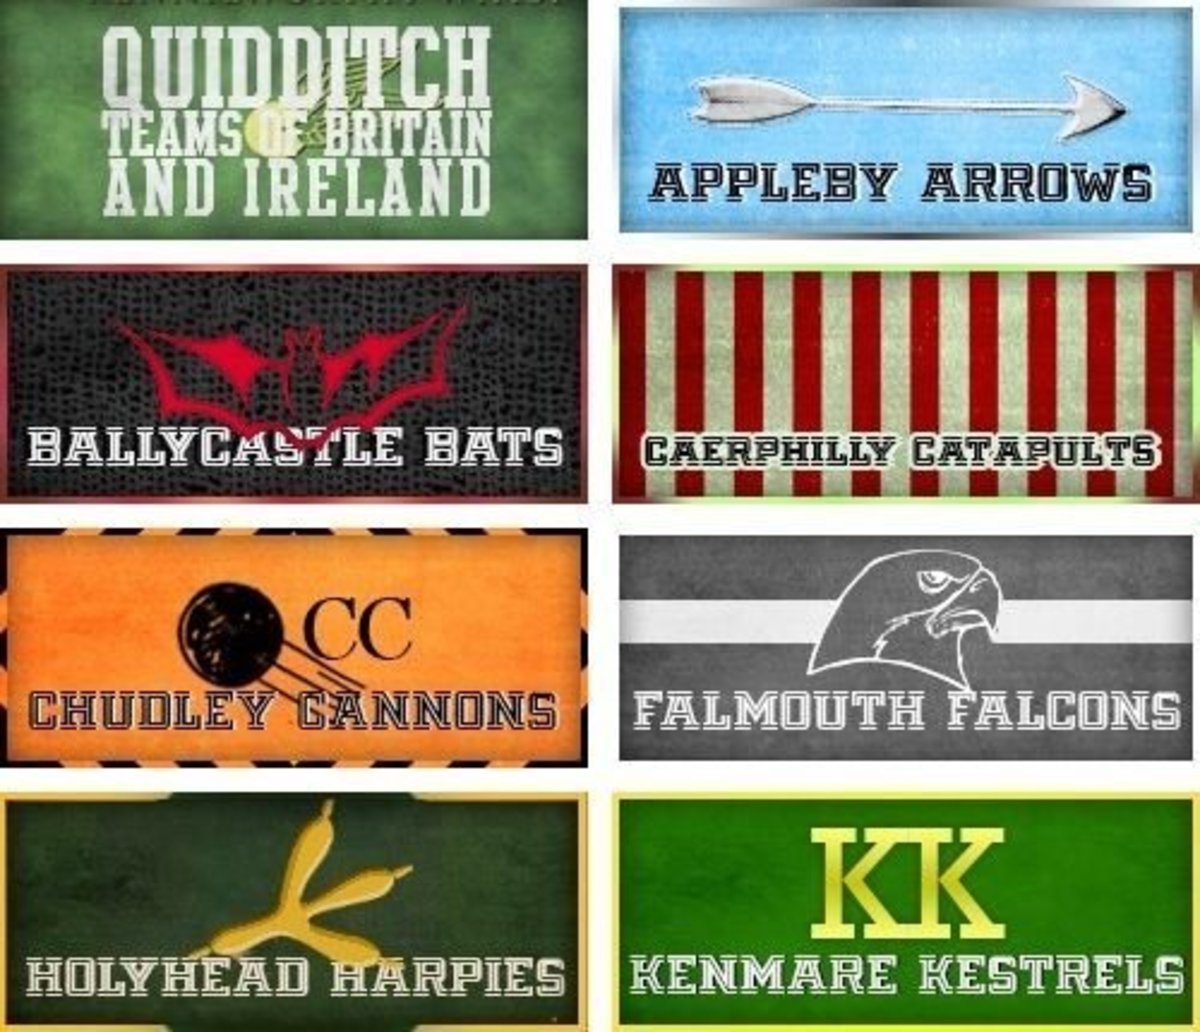 Quidditch team logos